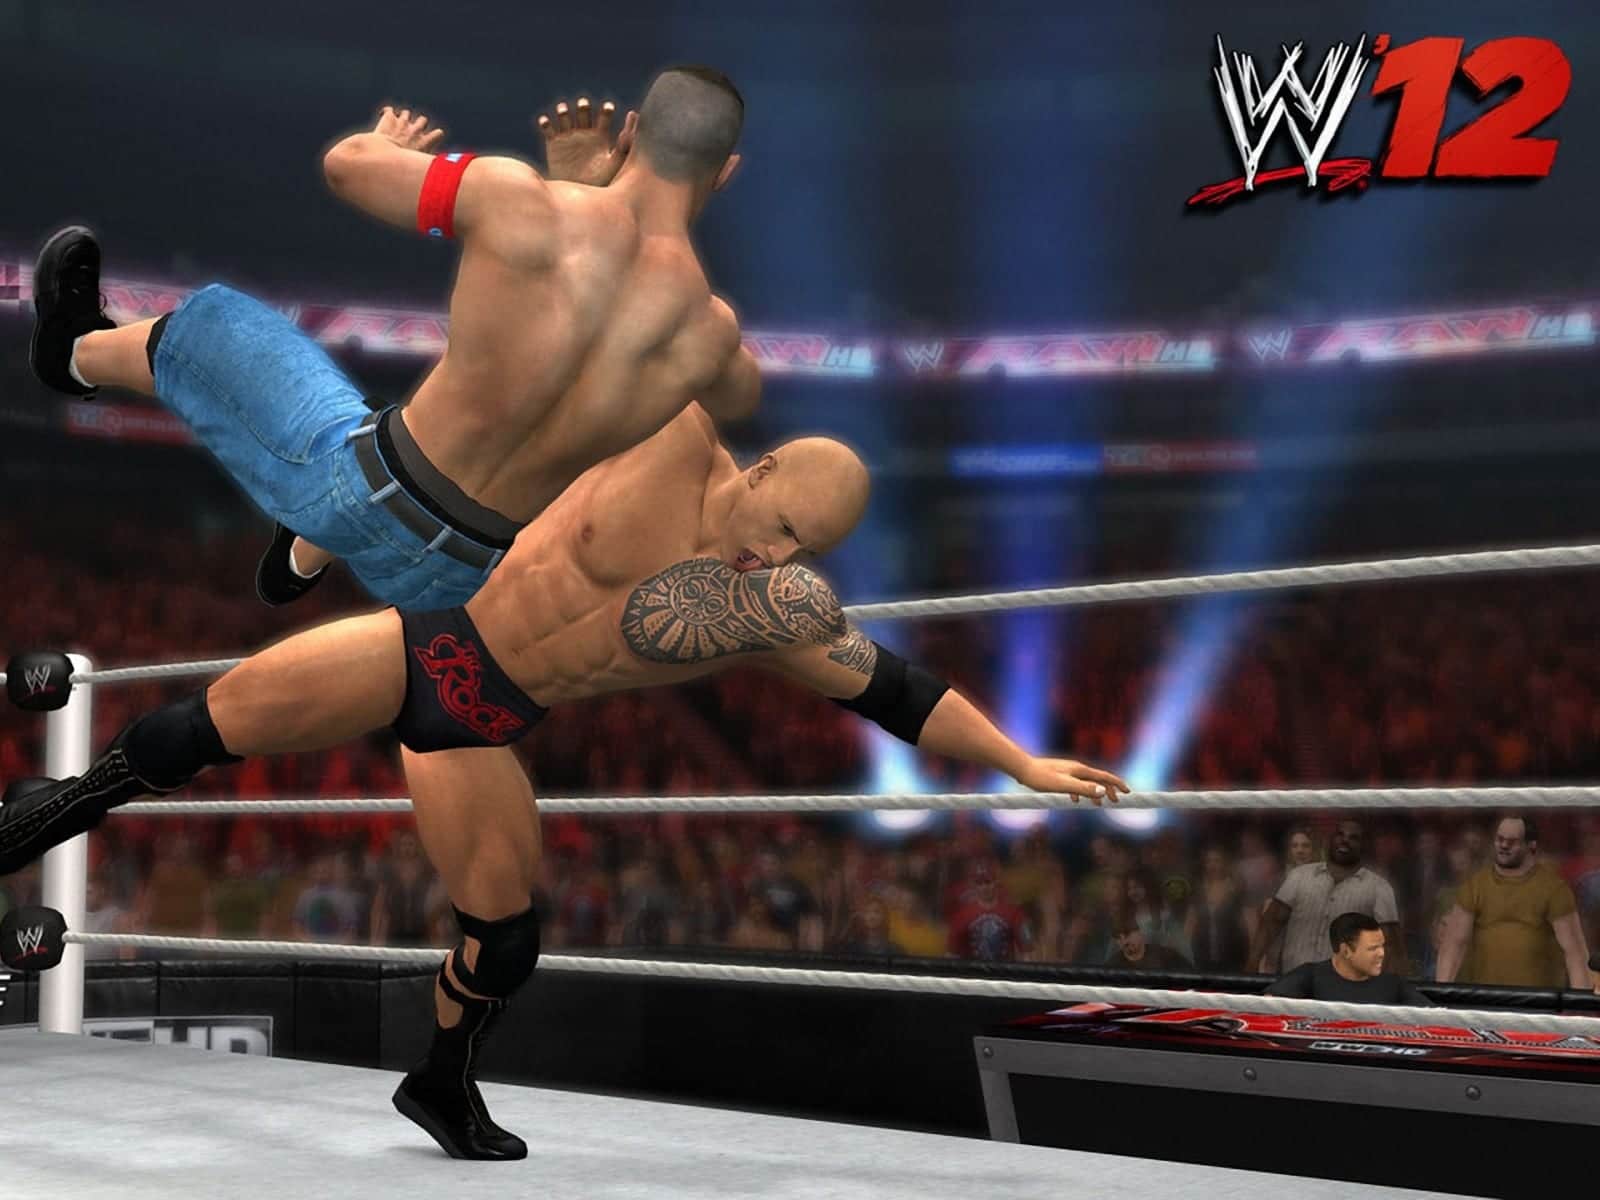 Smackdown vs RAW 2011 (Usado) - PS3 - Shock Games